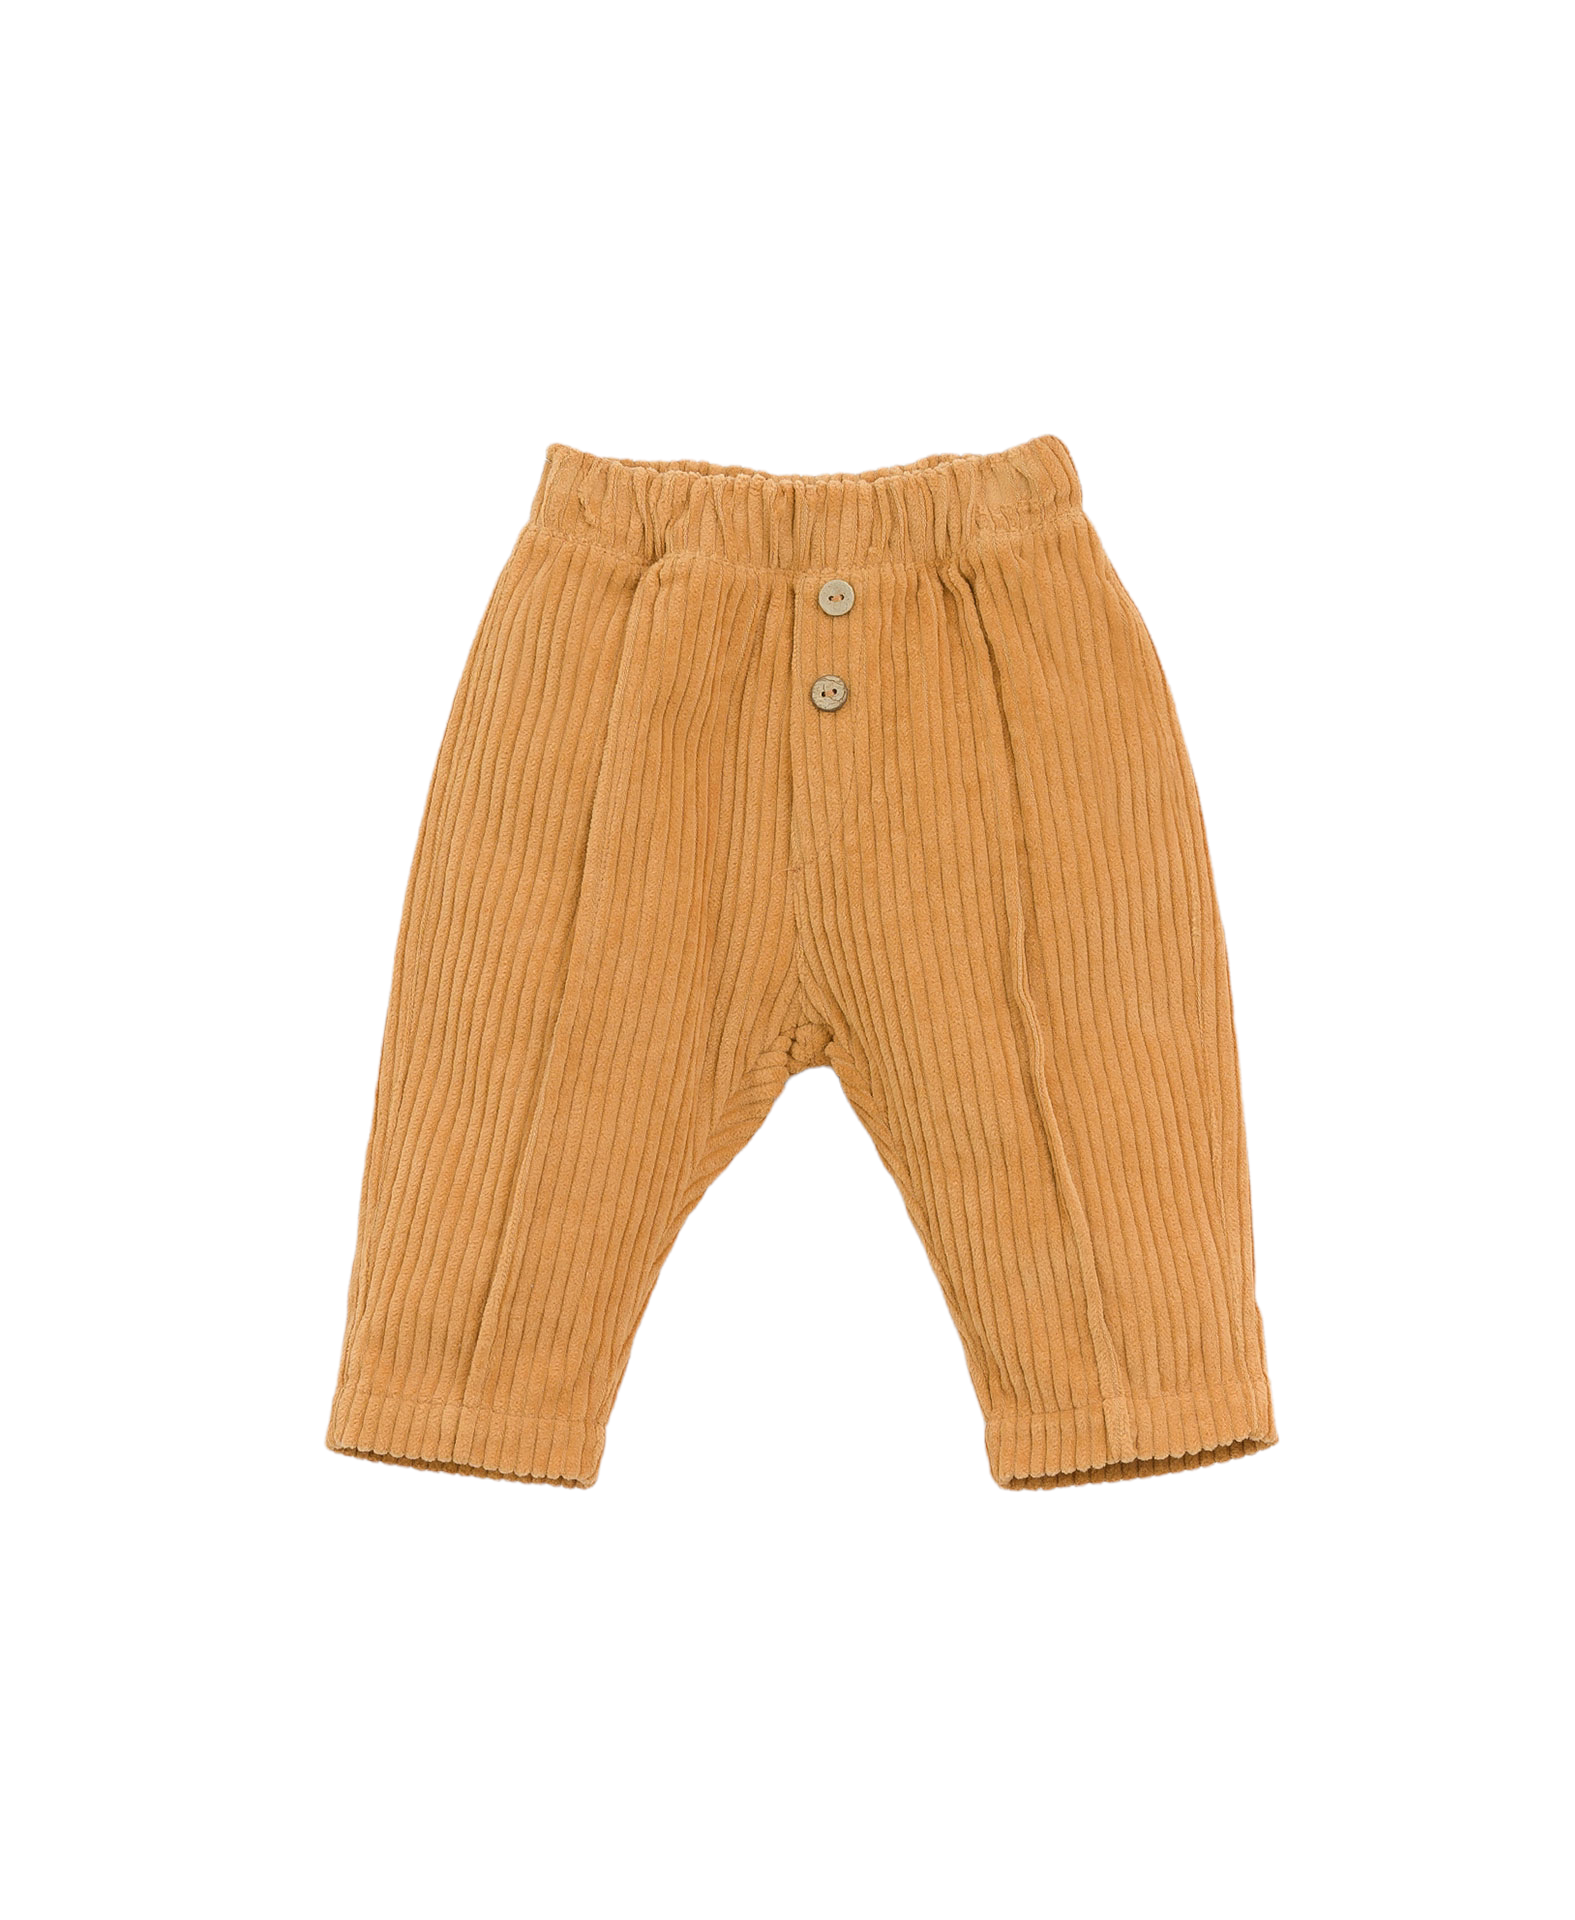 Pantalone in velluto a coste ocra per neonati e bambini